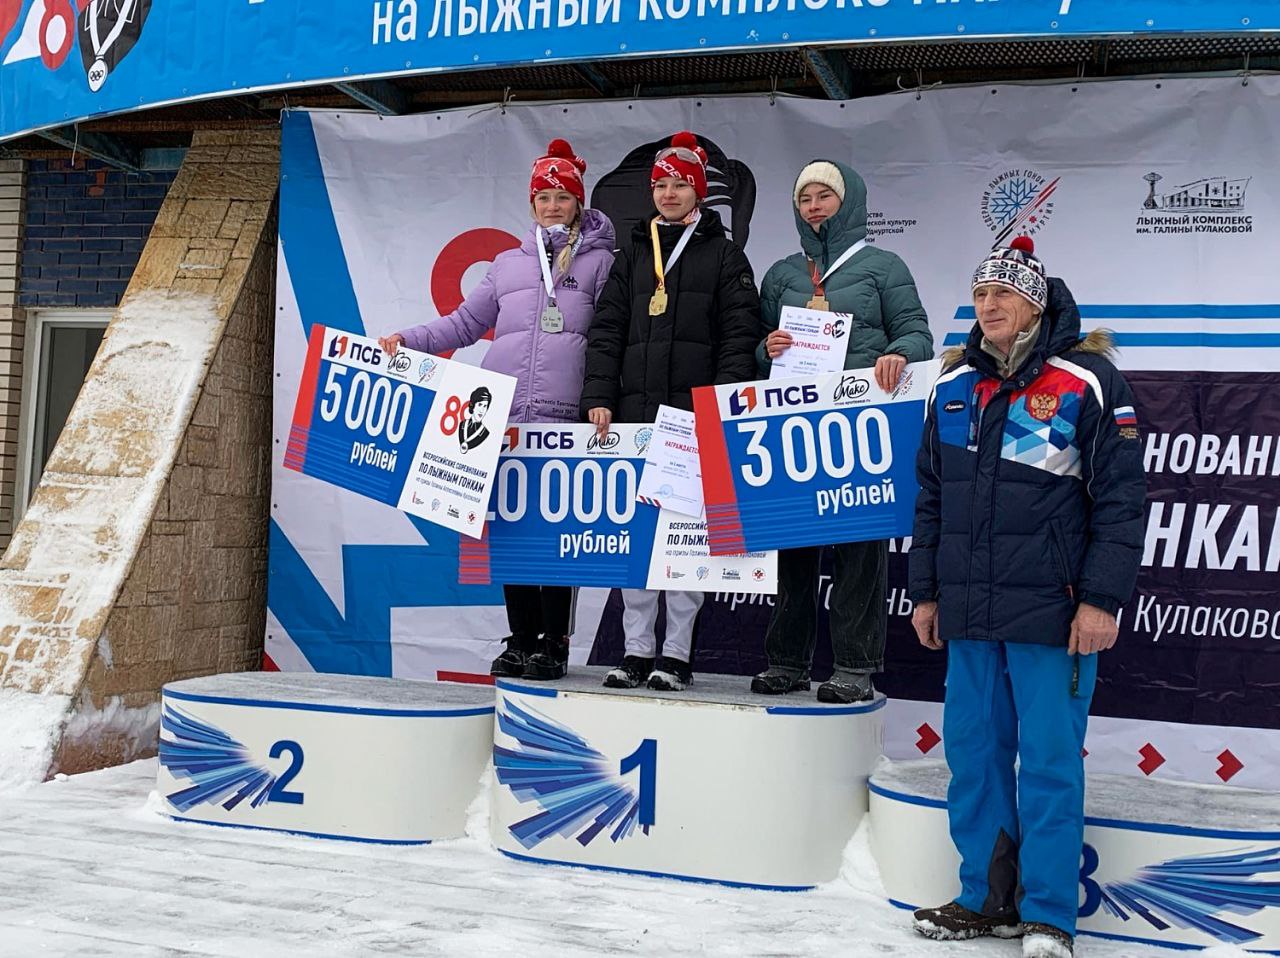 Юношеская сборная Якутии по лыжным гонкам стала призером всероссийских соревнований в Ижевске